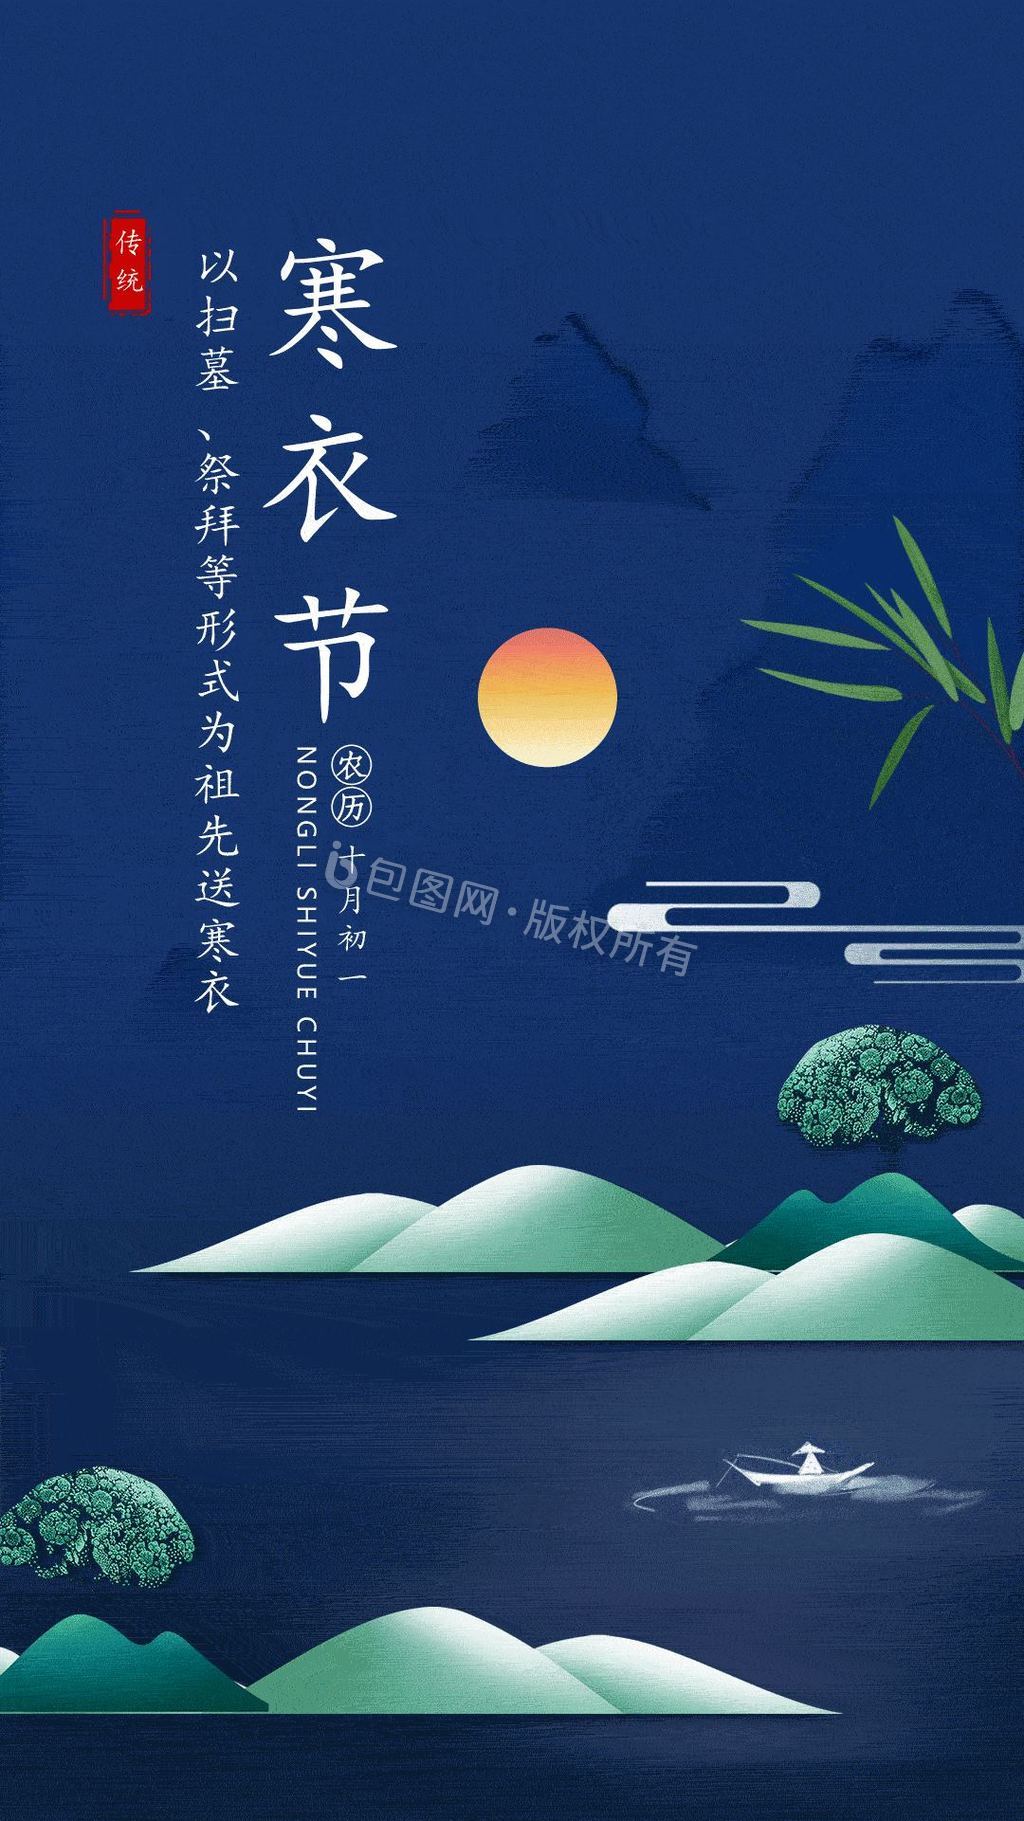 中国二十四节气寒衣节动态gif海报图片